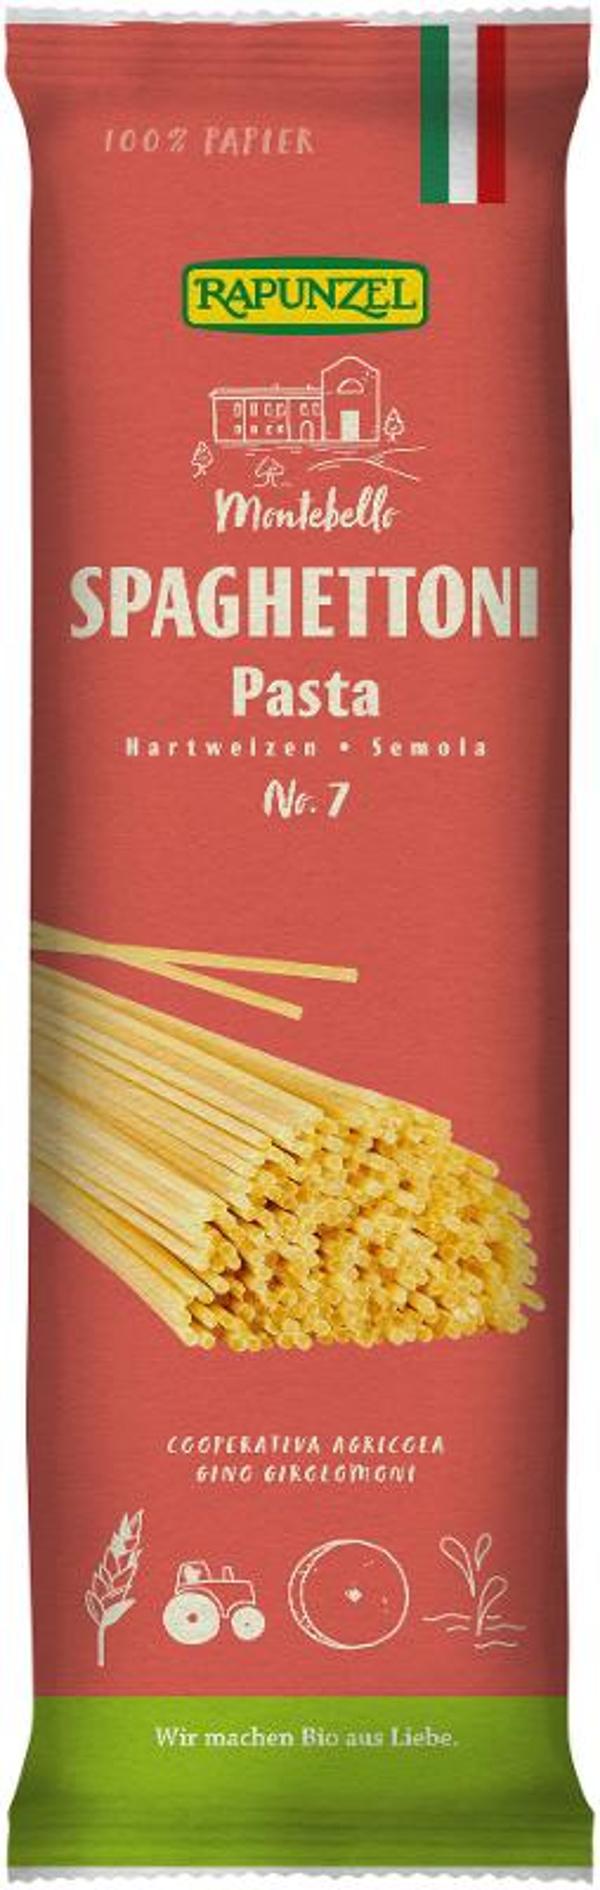 Produktfoto zu Spaghettoni Semola, No.7